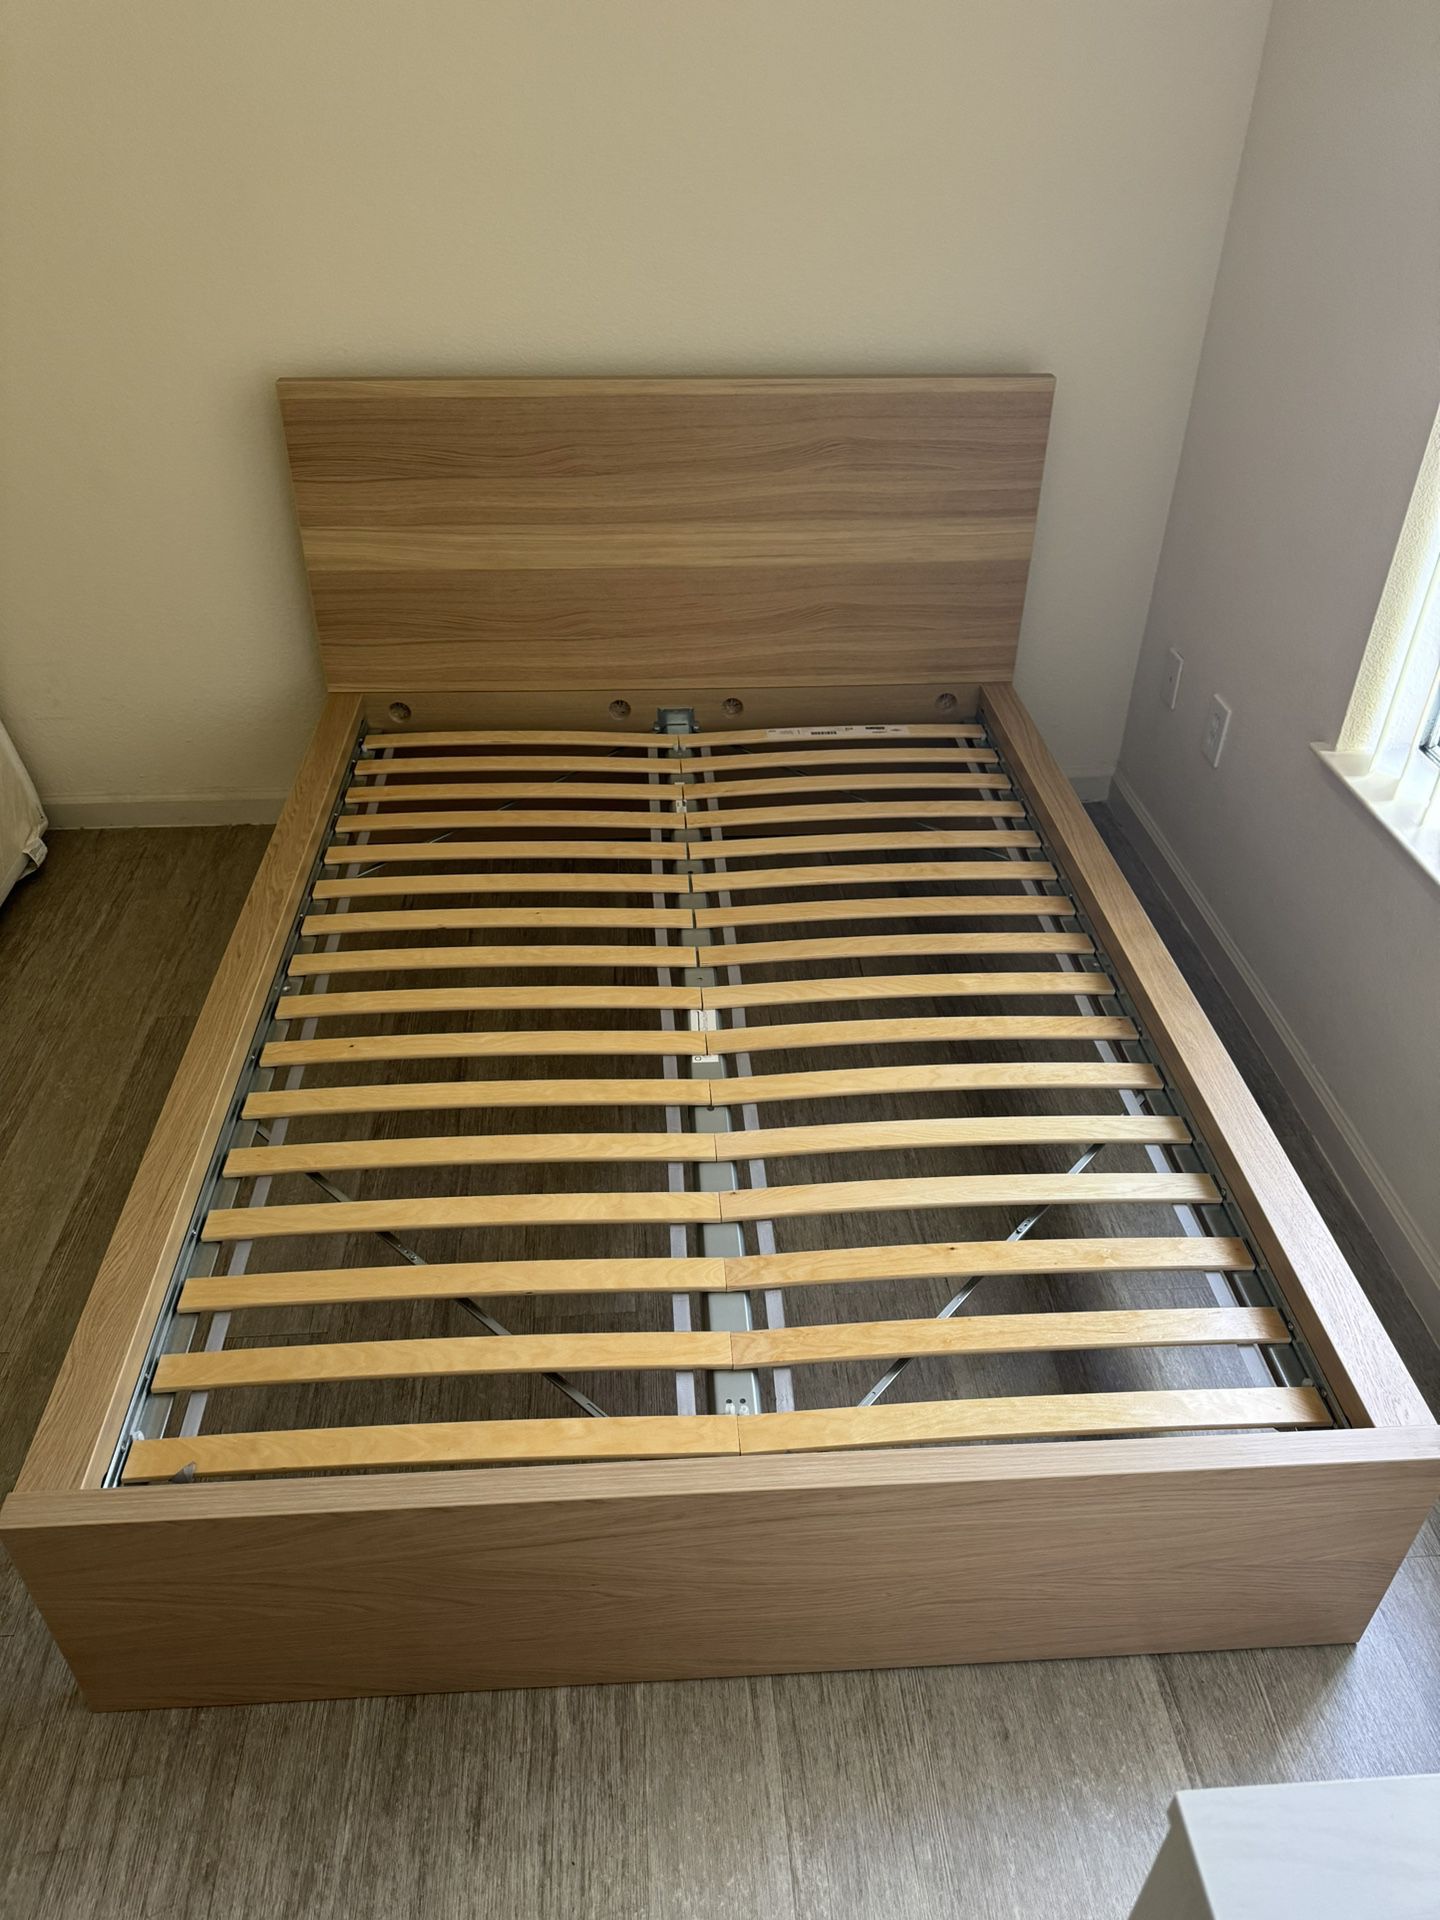 IKEA Malm Full Bed frame